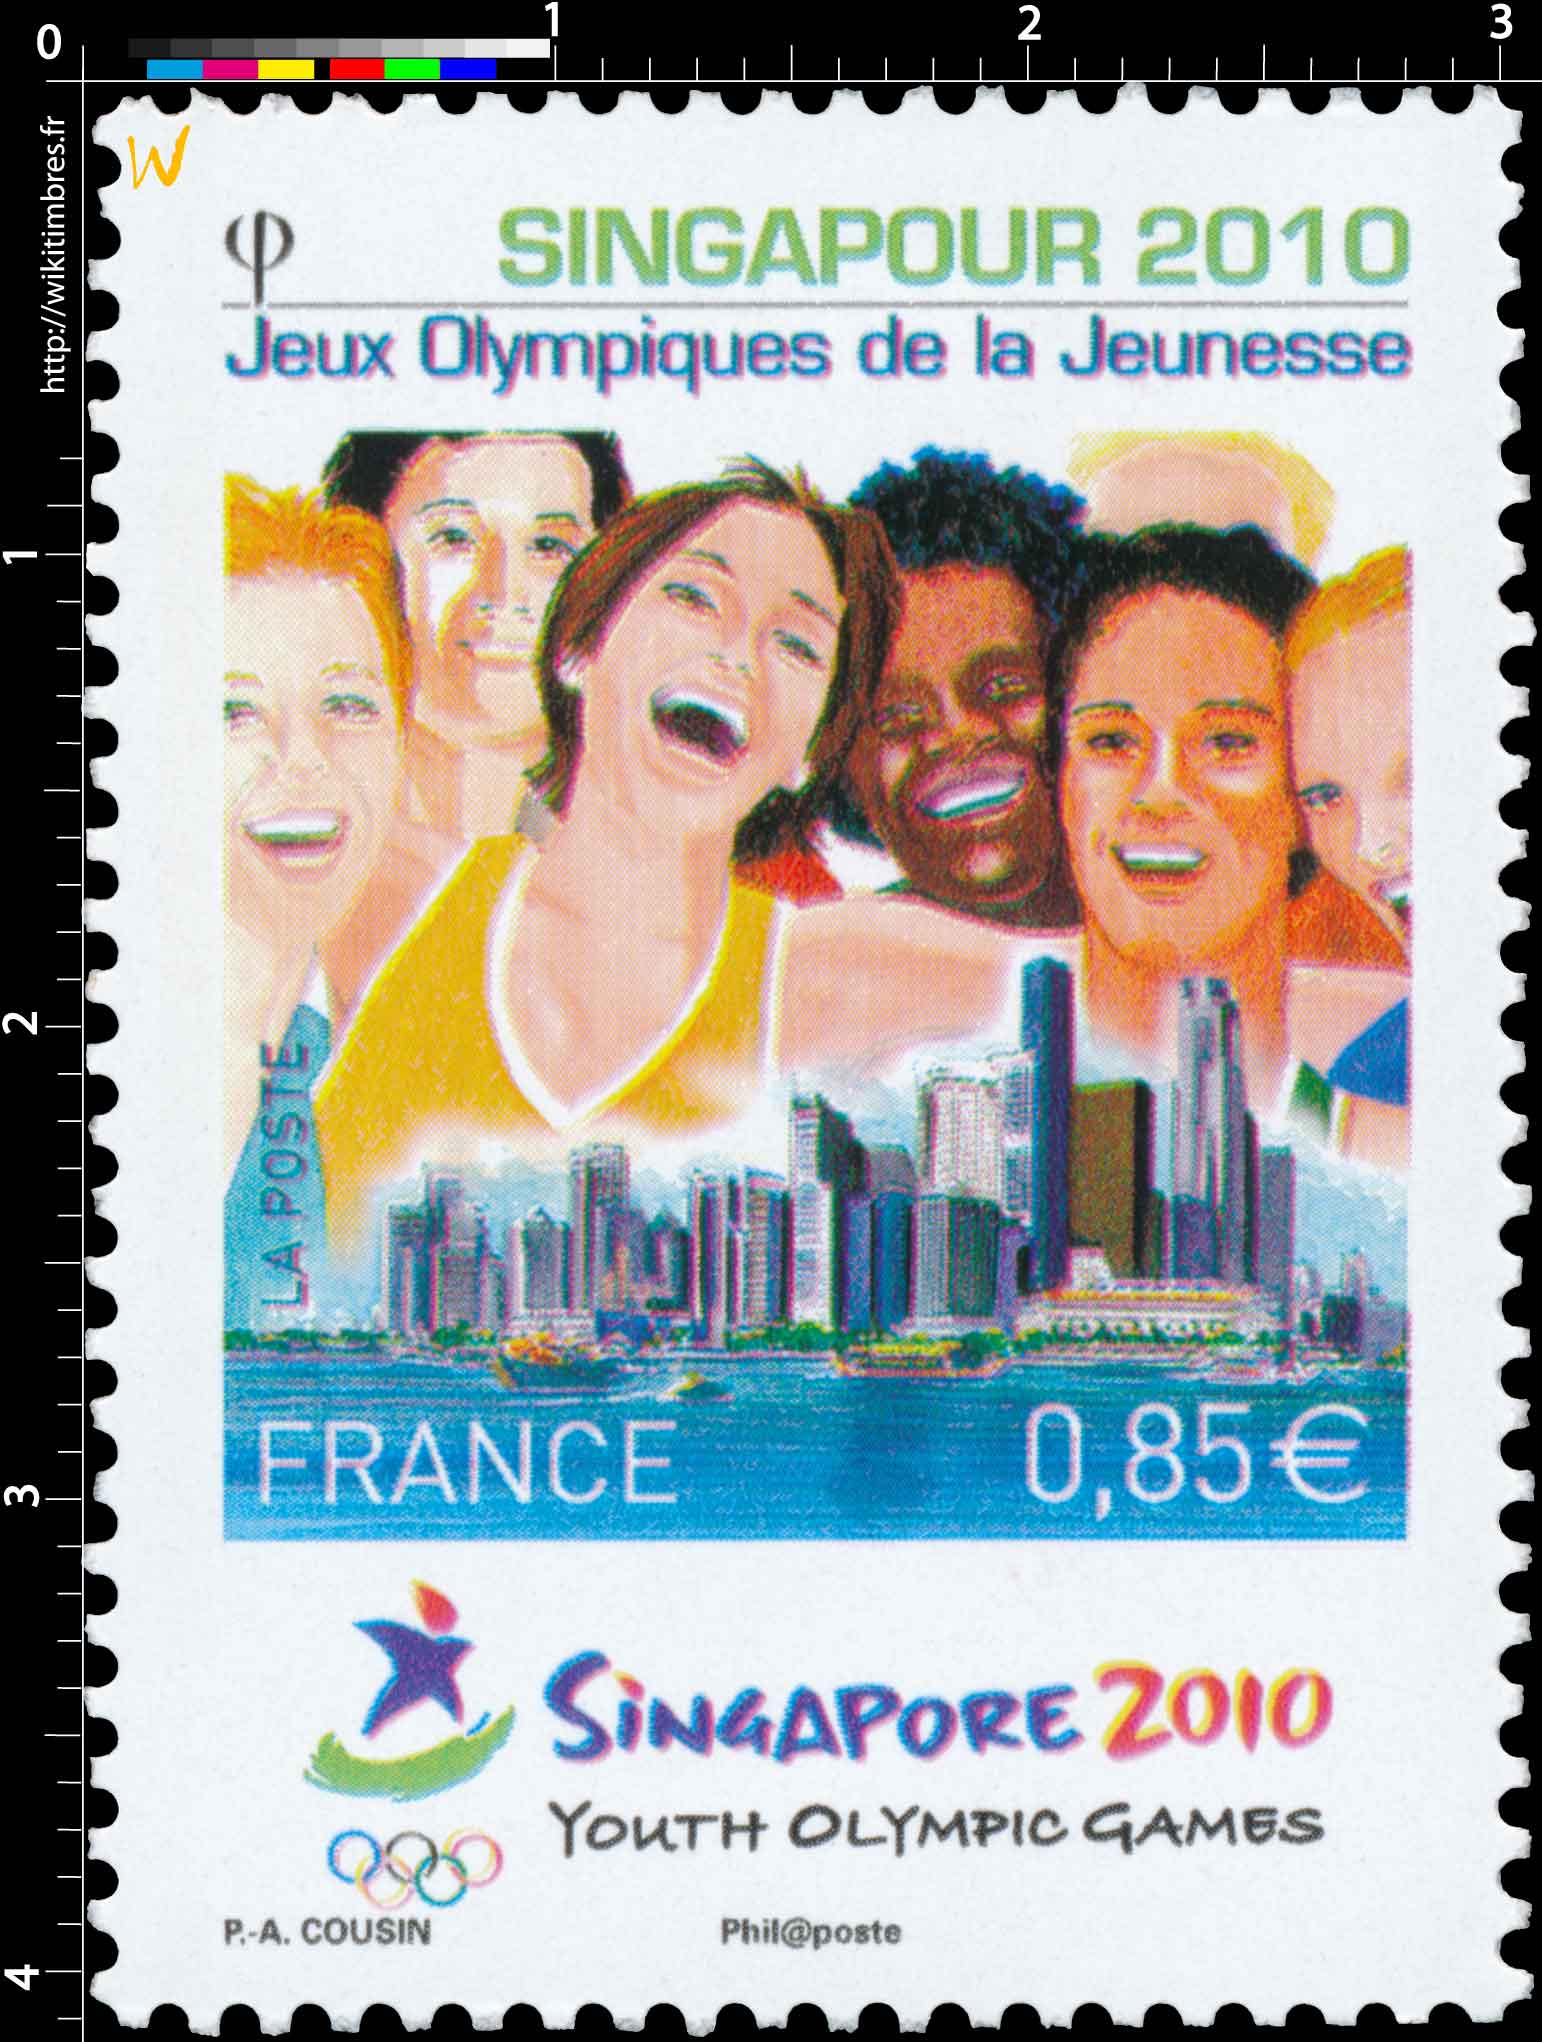 2010 Singapour - Jeux Olympiques de la Jeunesse YOUTH OLYMPIC GAMES